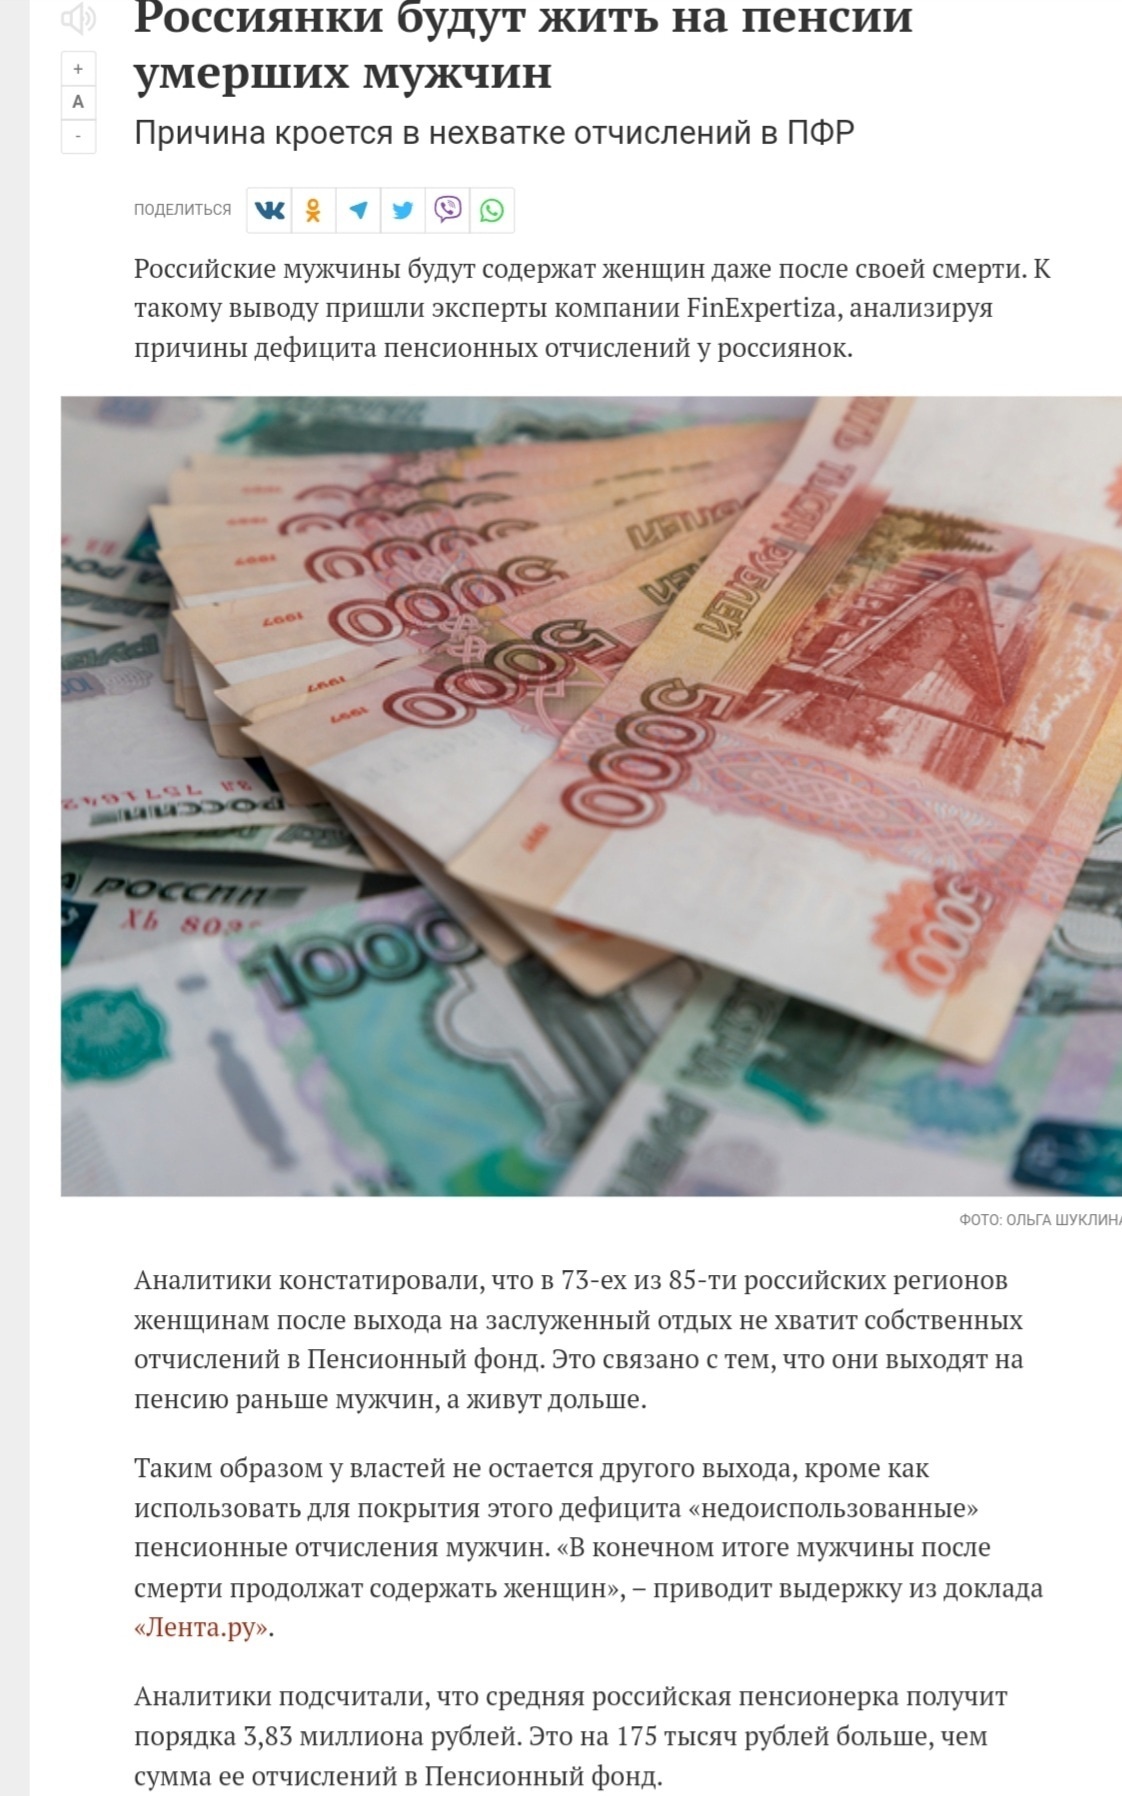 Самозанятые смогут уплачивать взносы в Пенсионный фонд РФ из мобильного приложения «Мой налог»